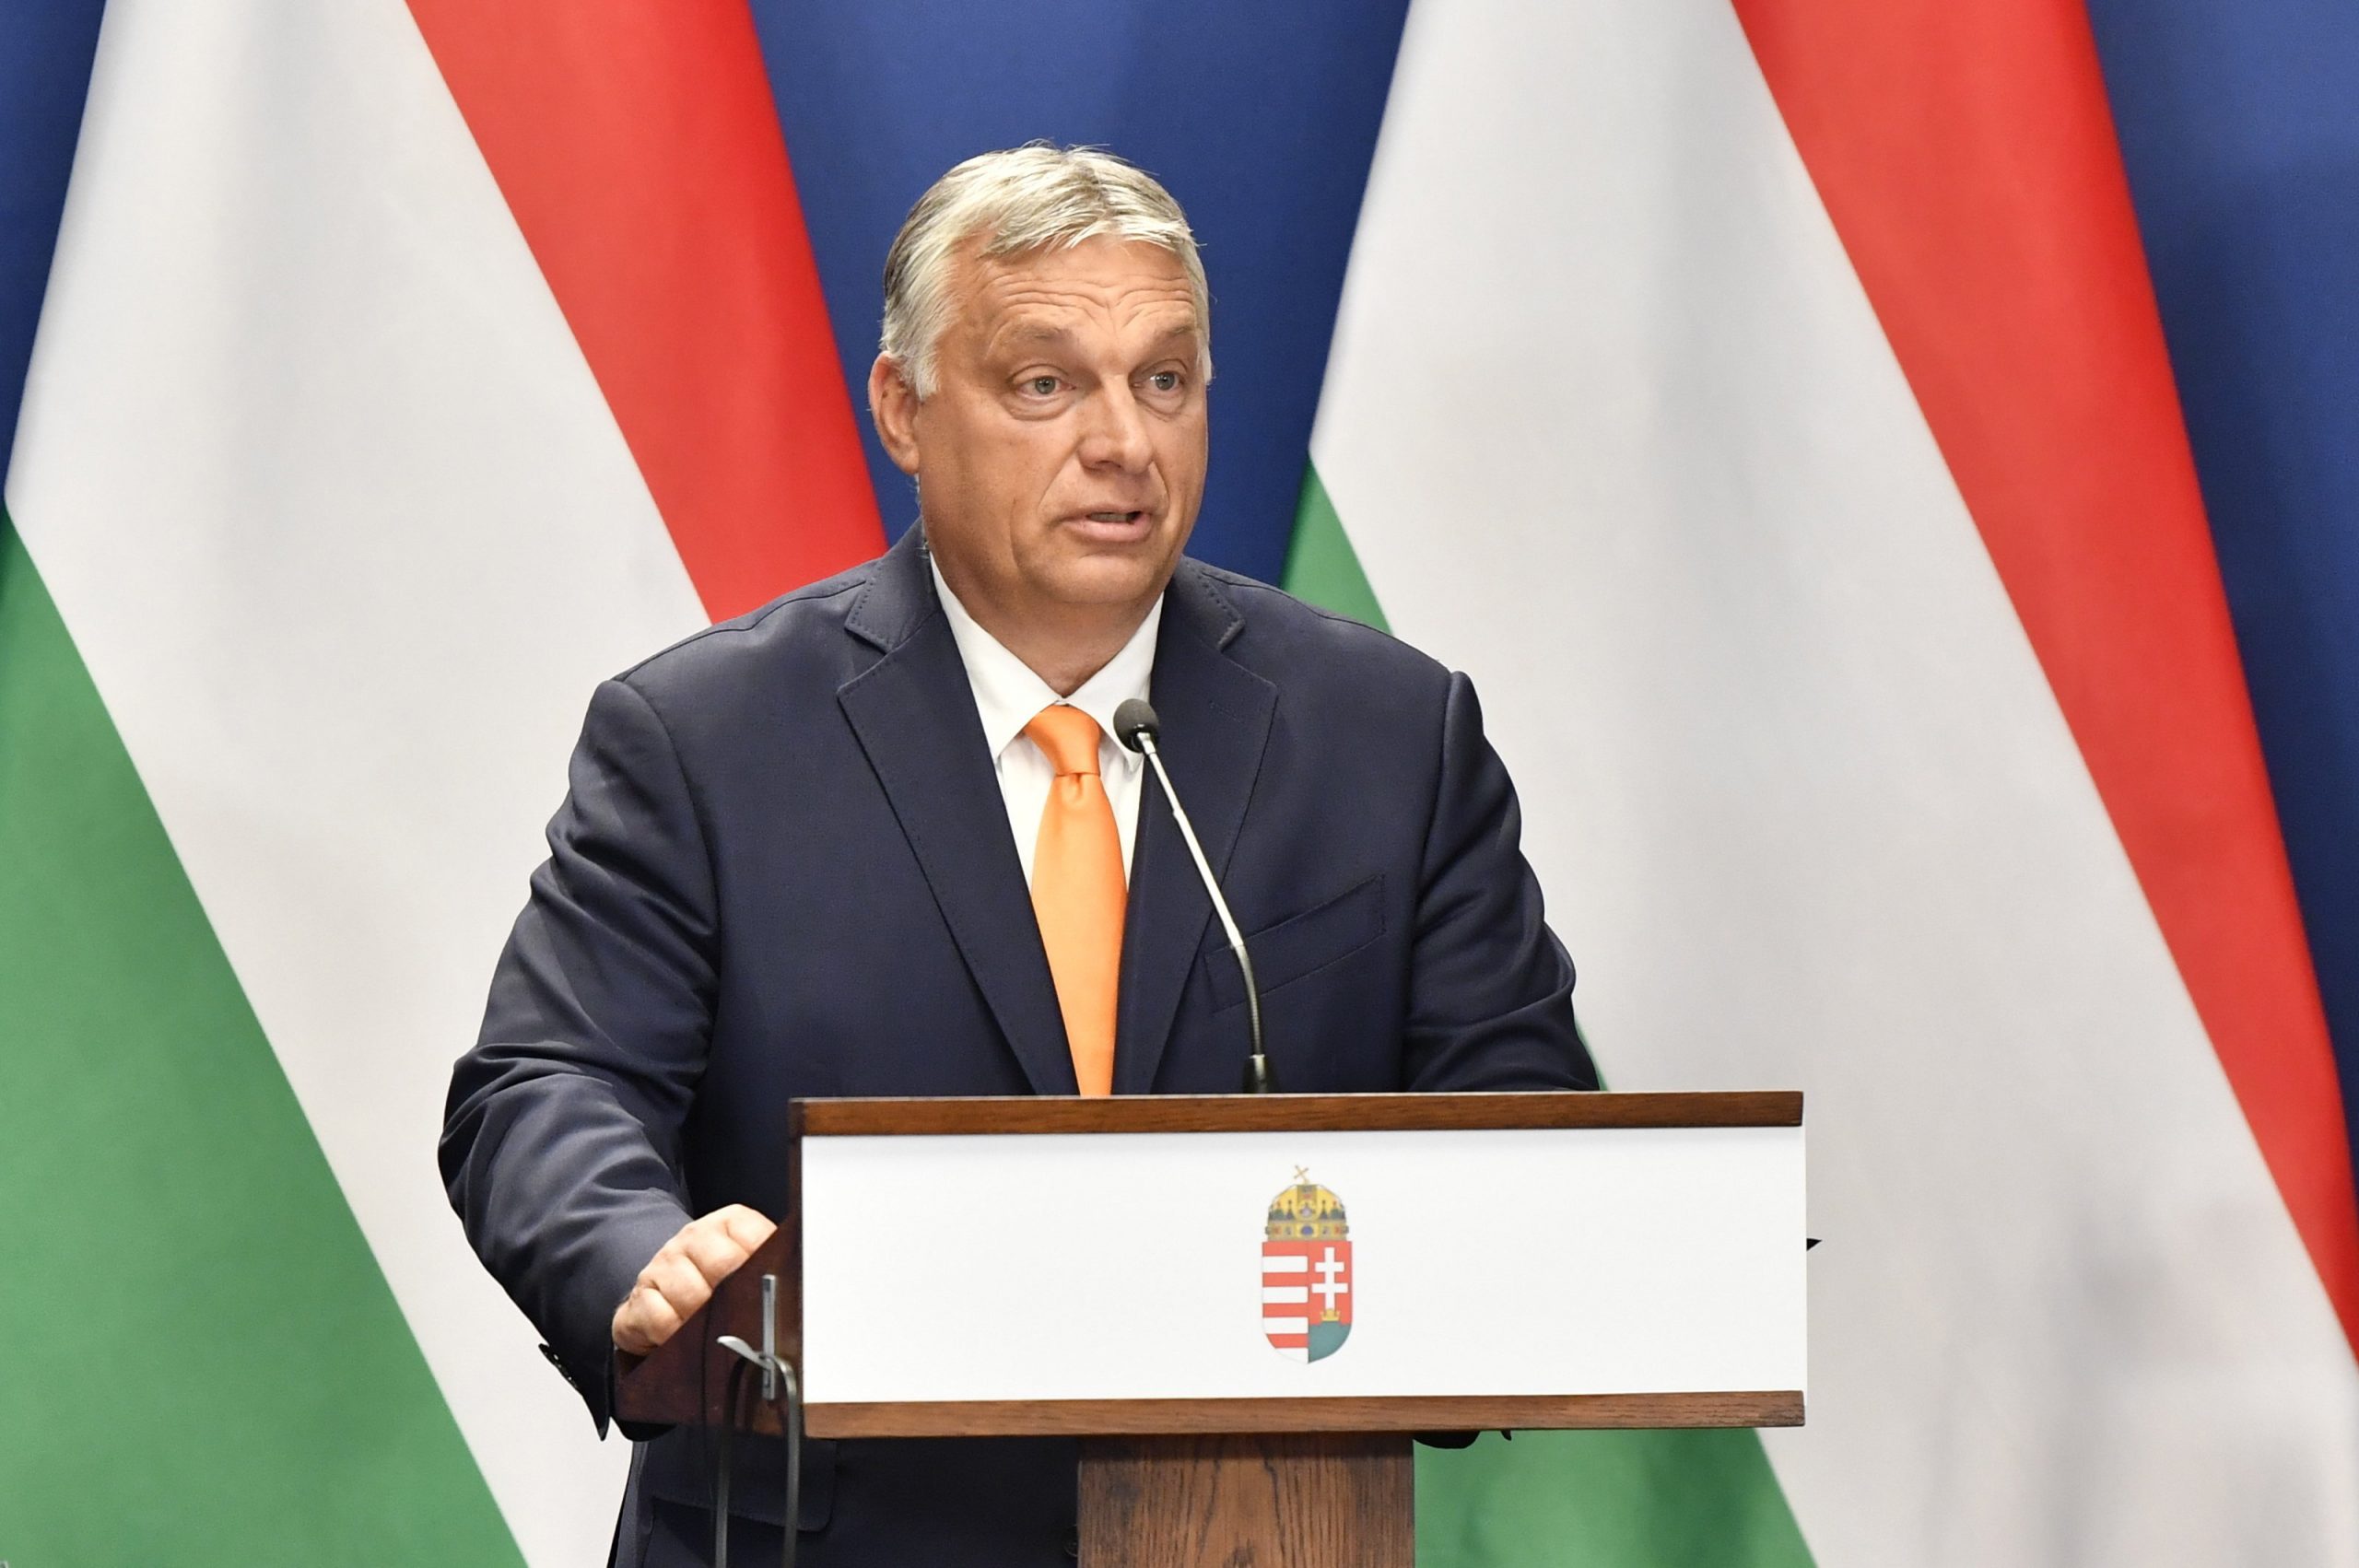 Orbán bei außerordentlicher Pressekonferenz: 